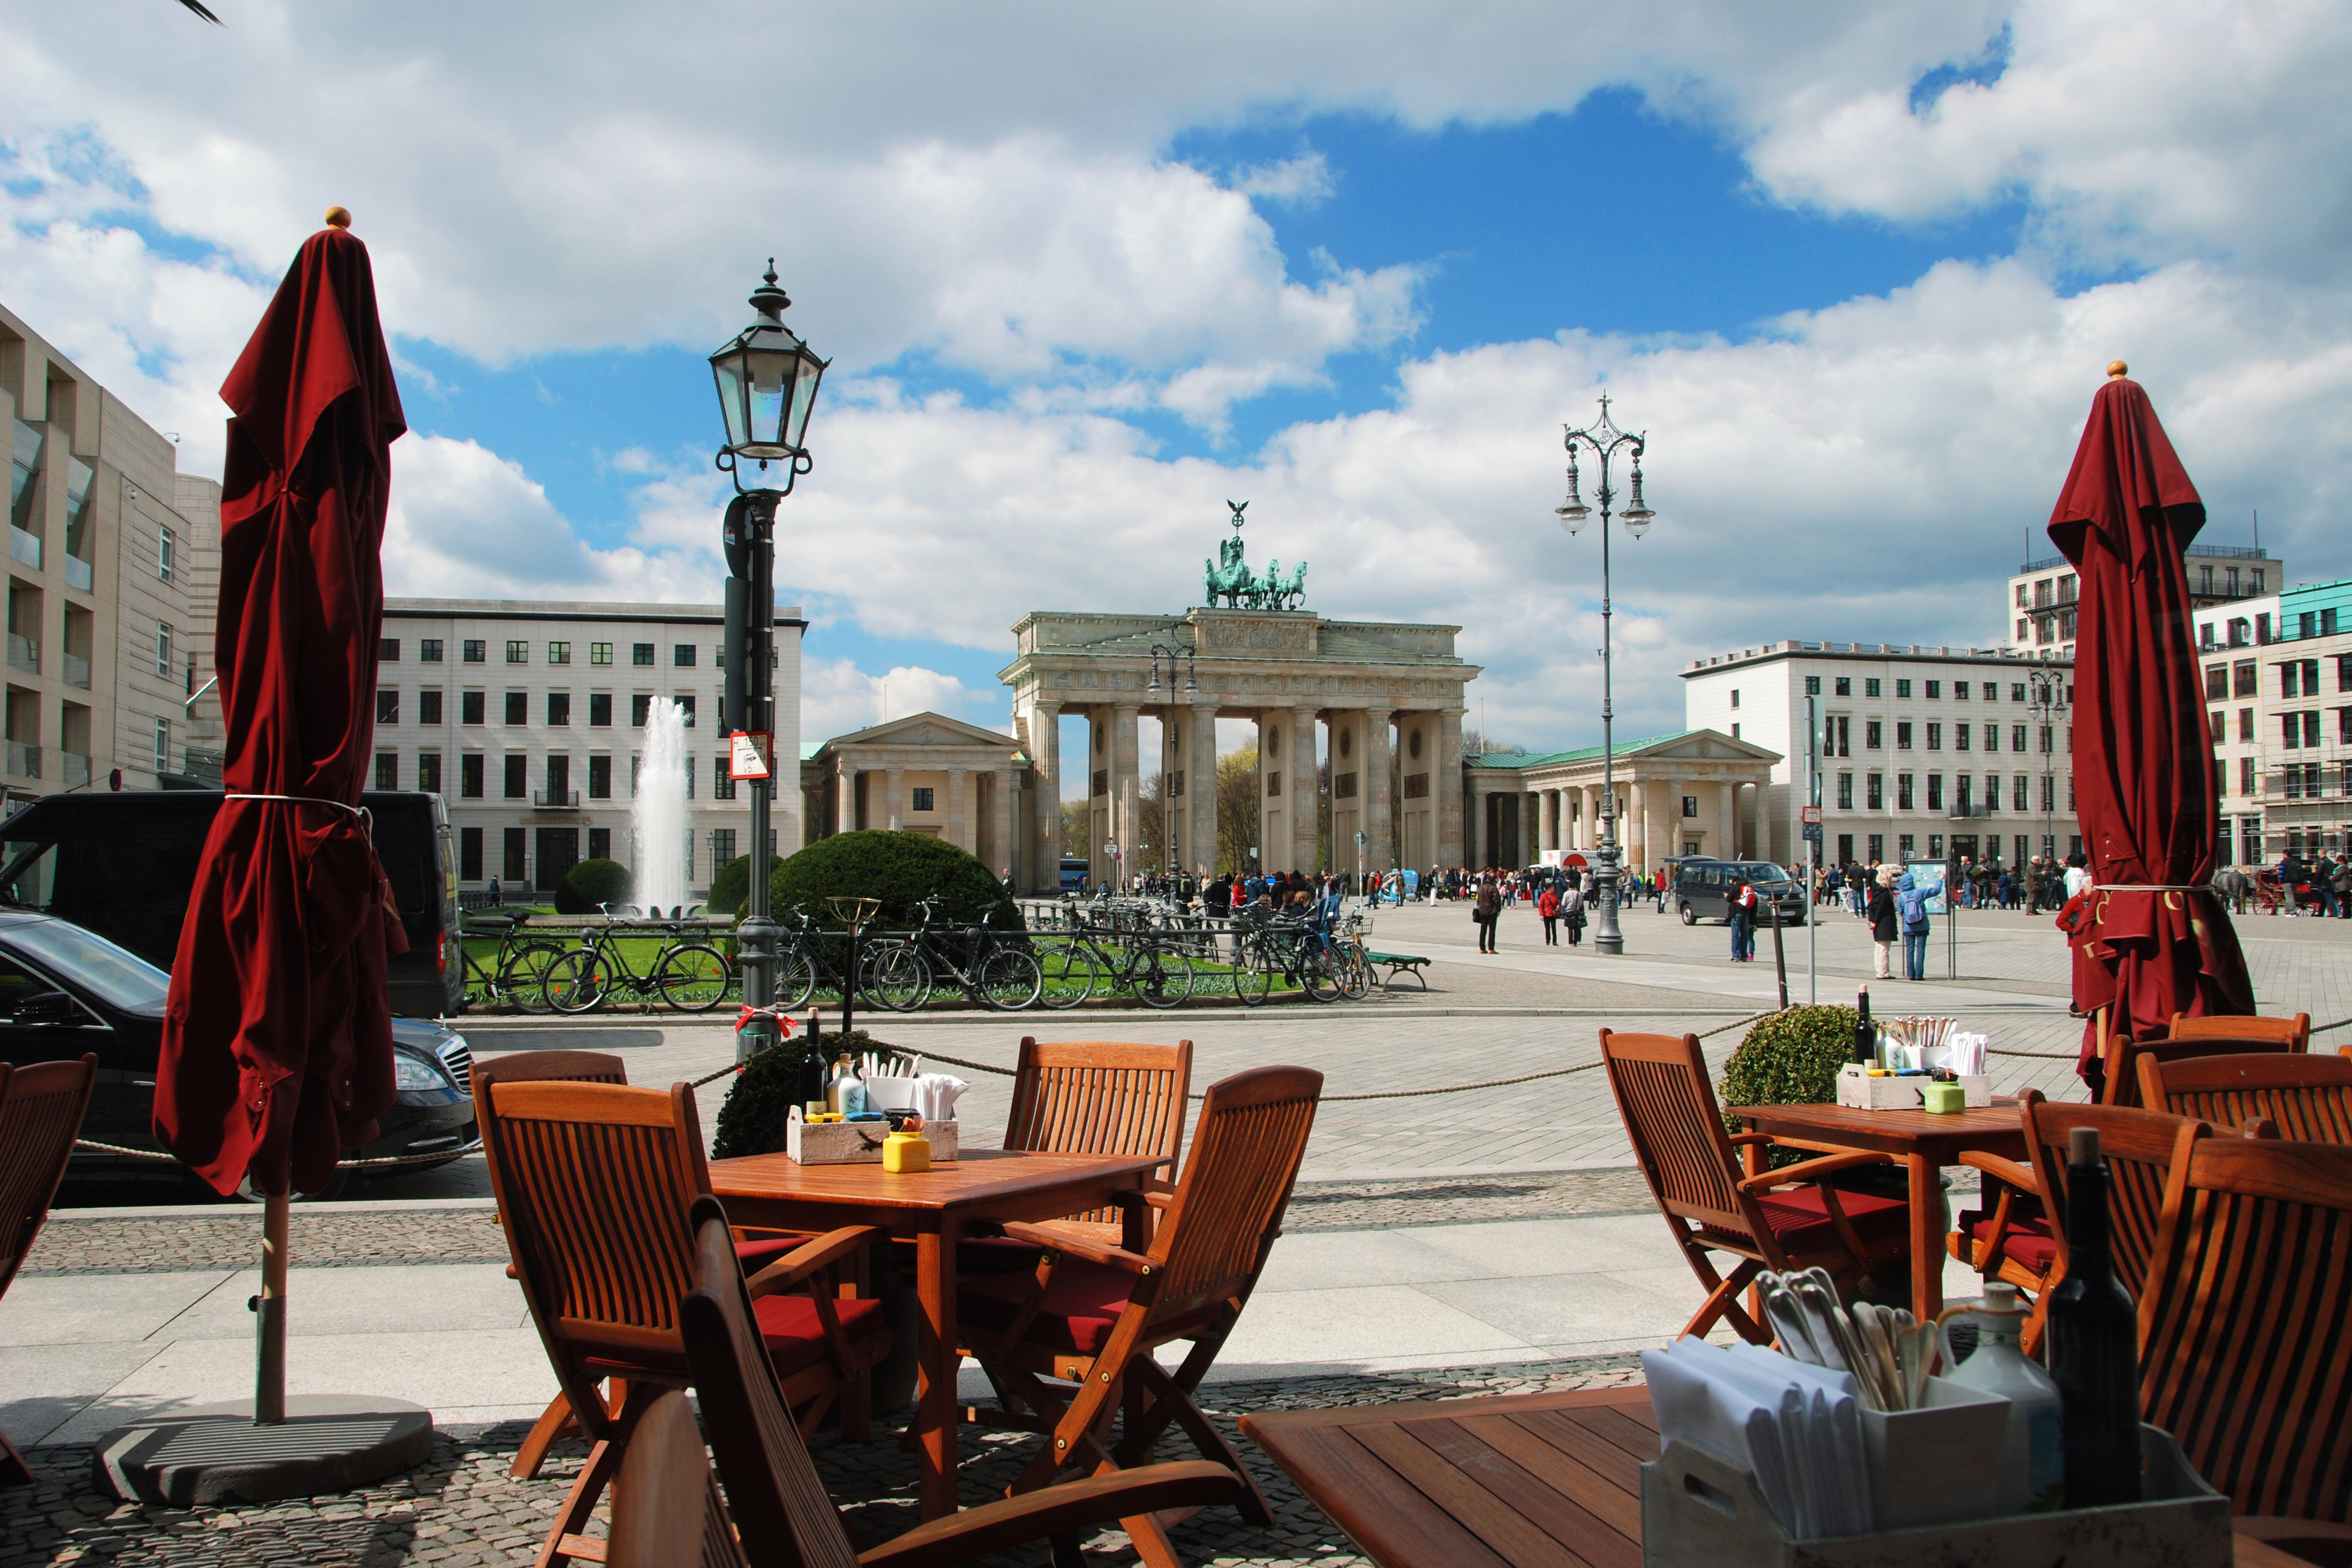 Бранденбургские ворота как символ иммиграции в Германию